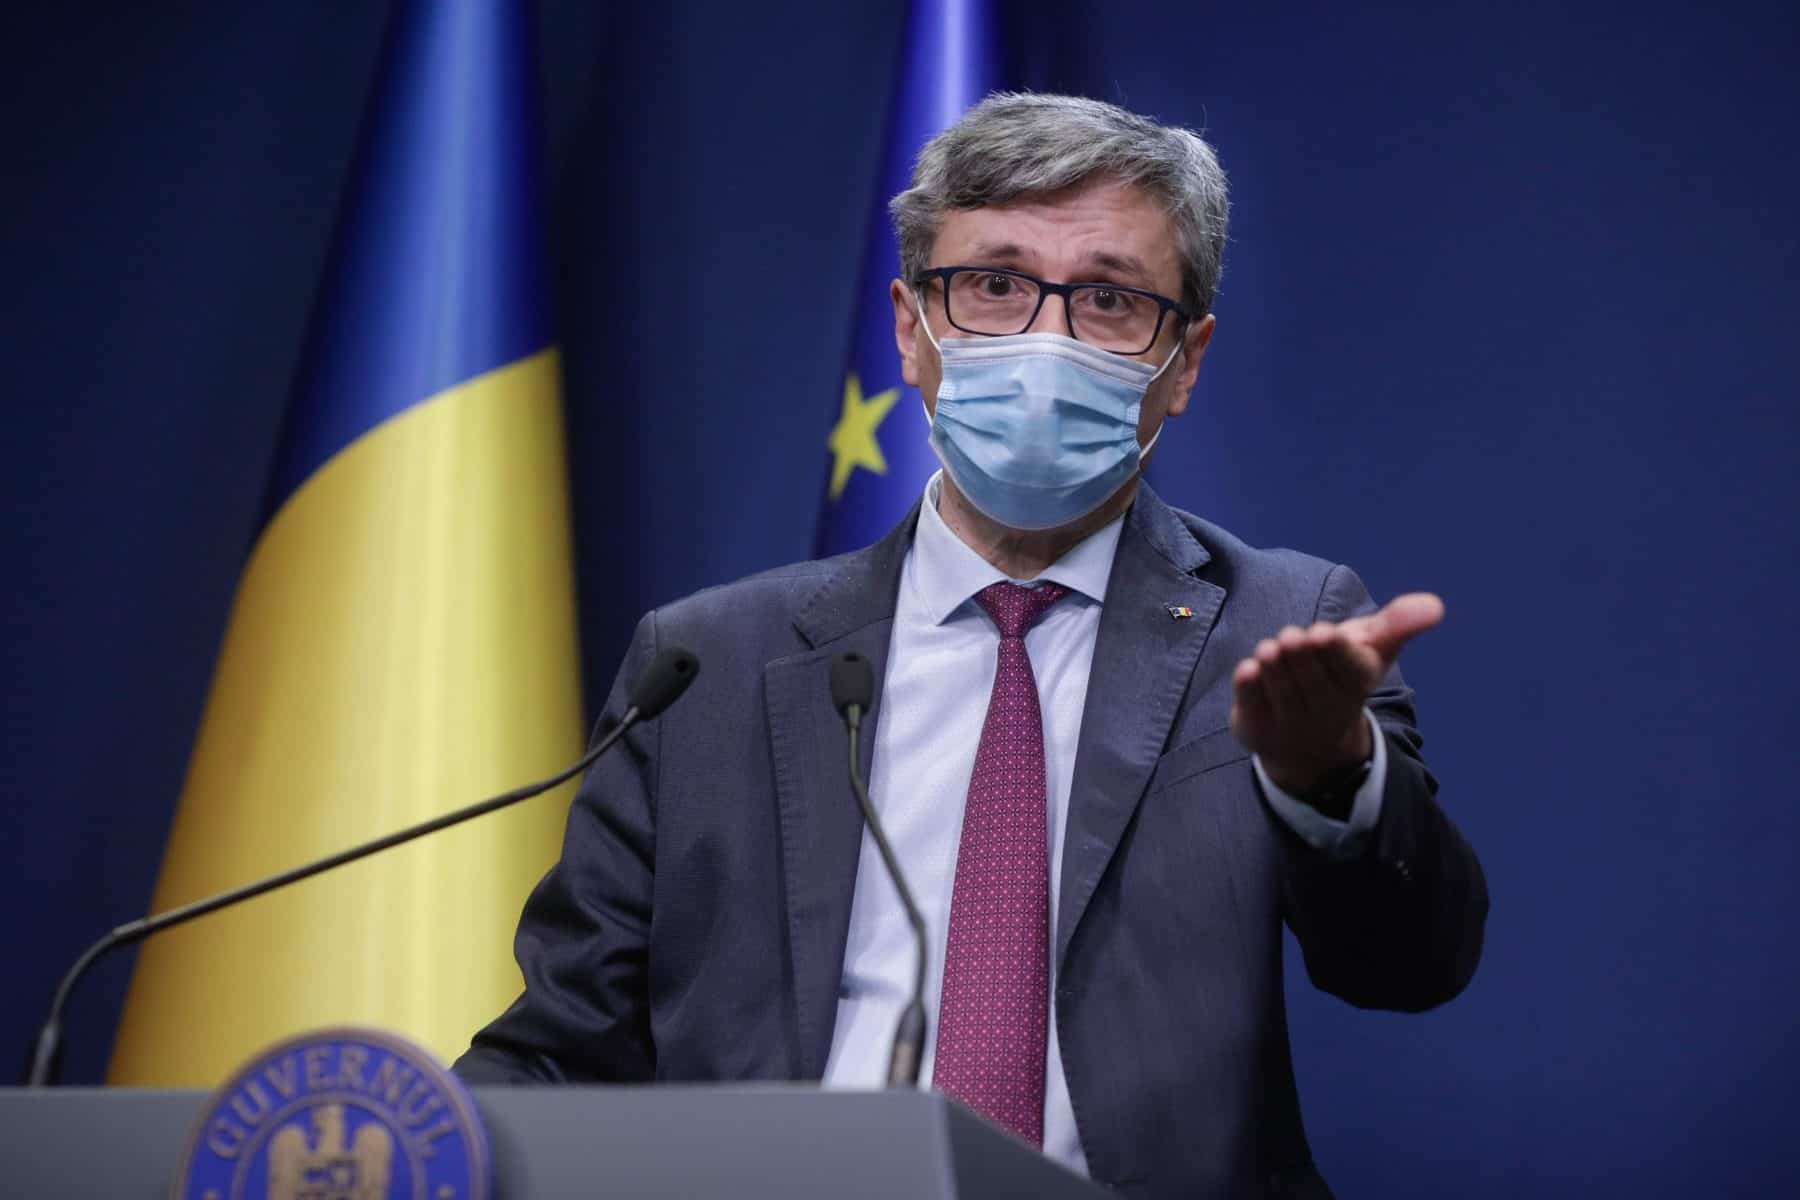 ministrul energiei despre depozitele de gaze din românia - ”sunt aproape pline”